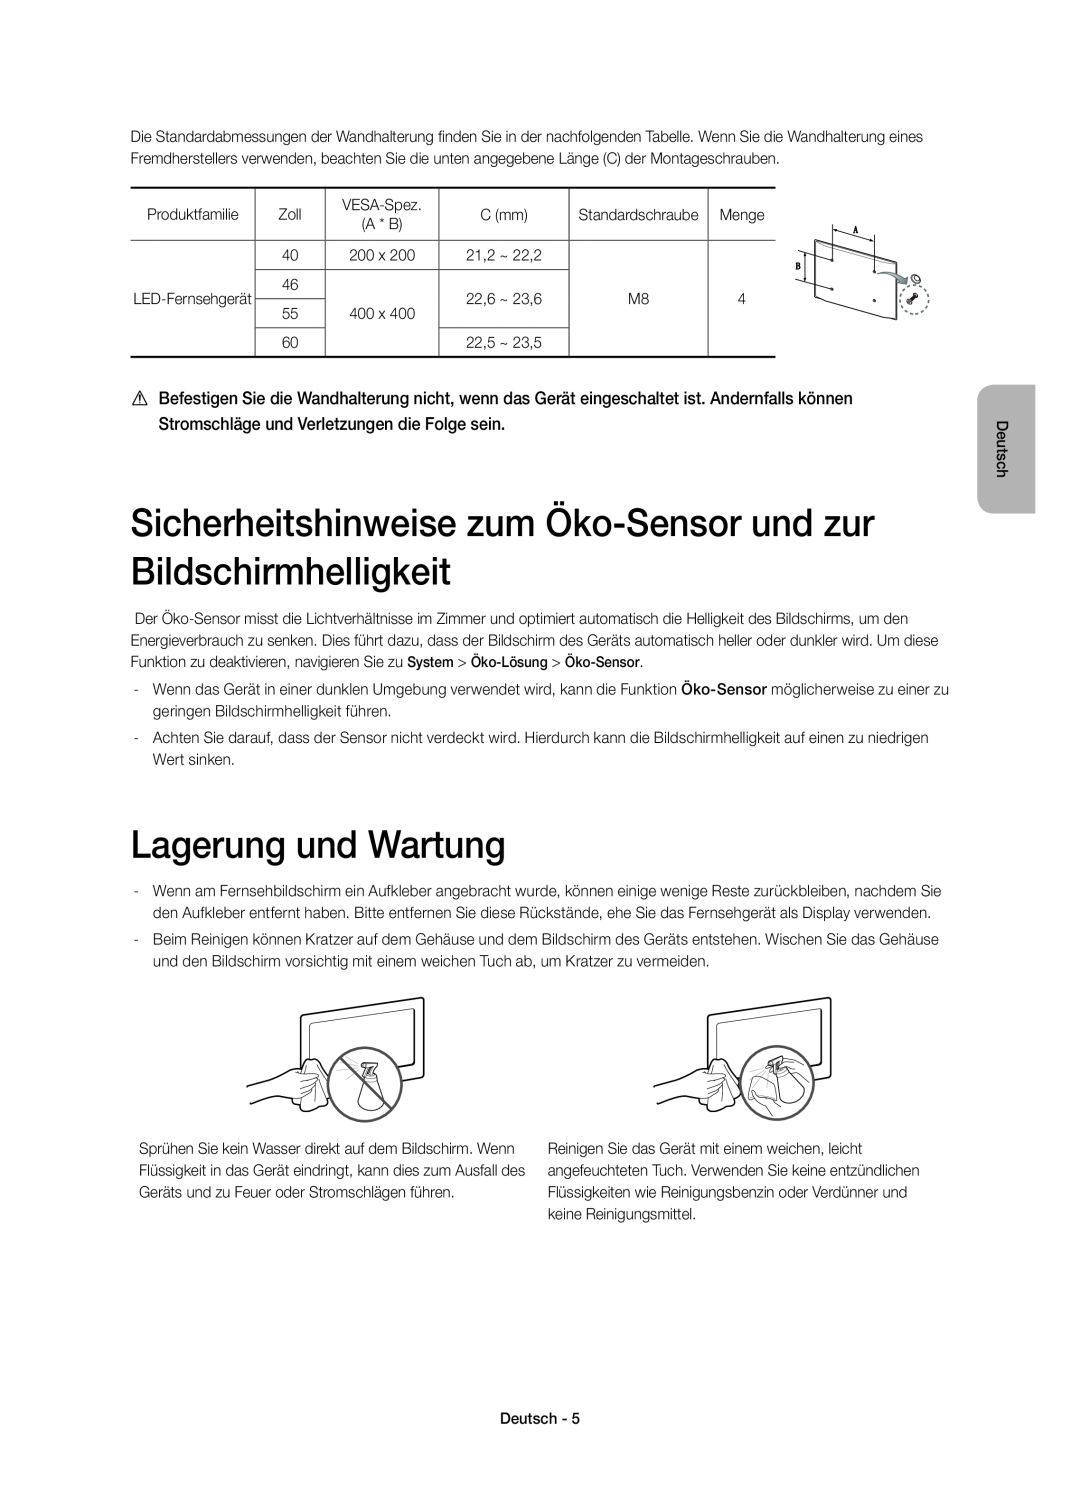 Samsung UE46H7000SZXZT manual Sicherheitshinweise zum Öko-Sensor und zur Bildschirmhelligkeit, Lagerung und Wartung, A * B 